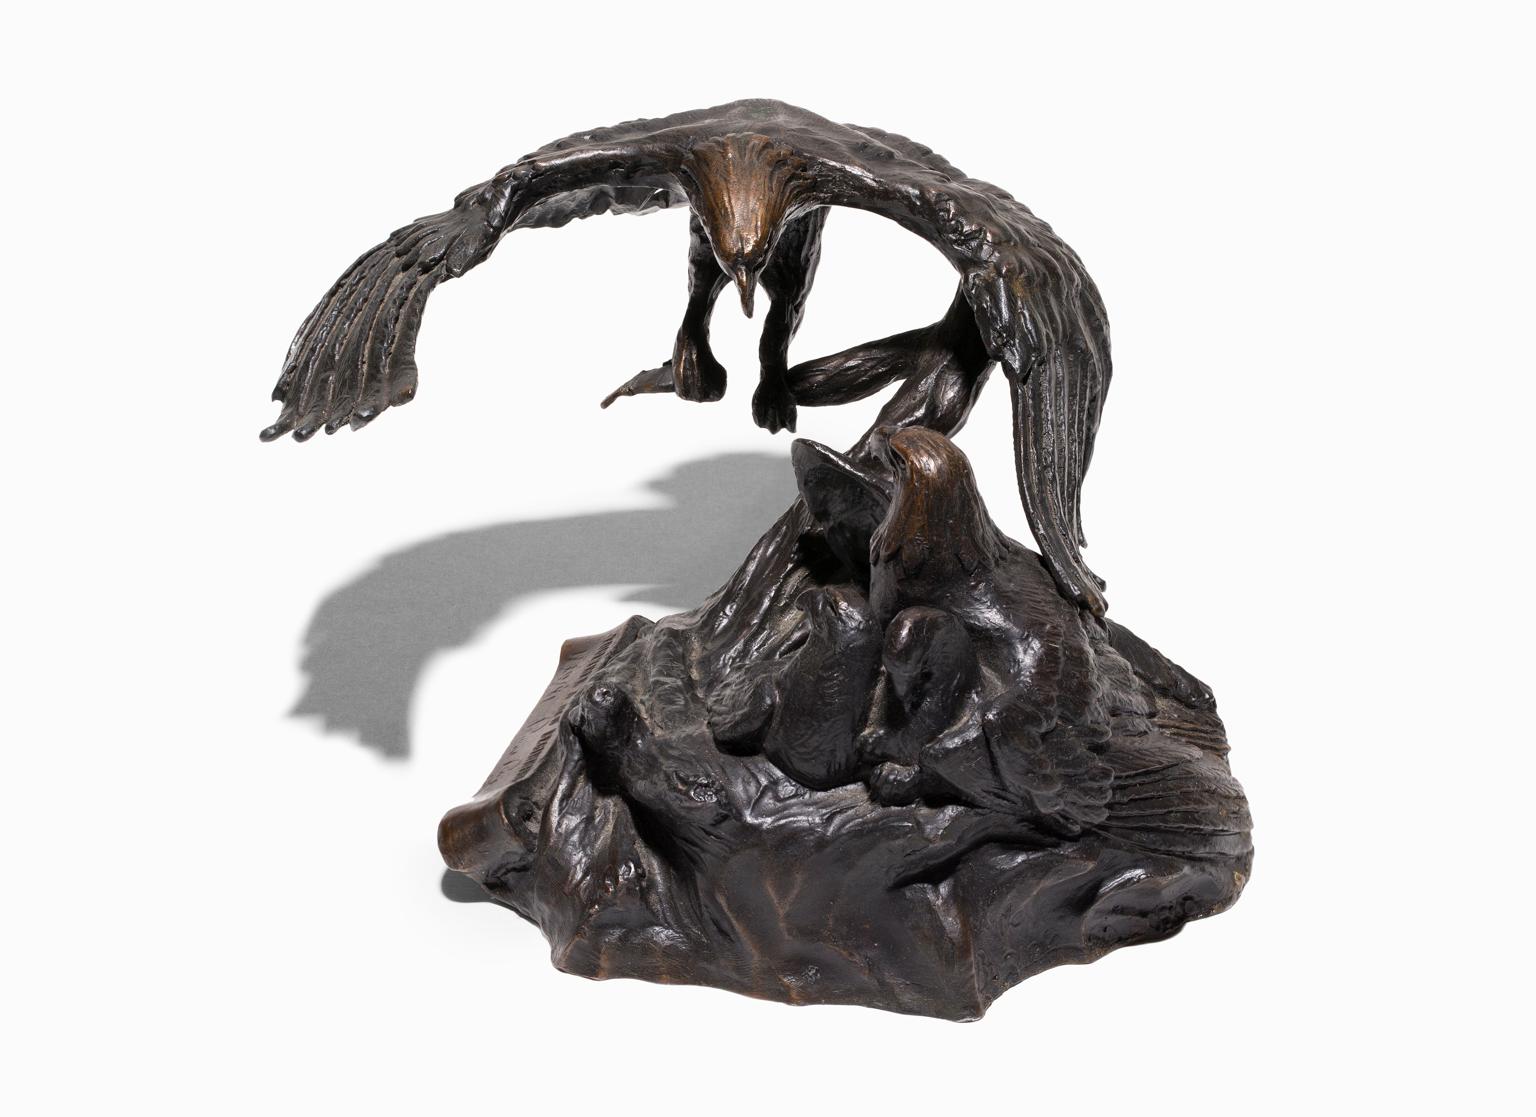 Miley Busiek Frost Figurative Sculpture – „Together A New Beginning“, Bronzestatue eines Adlers aus der Zeit von Ronald Reagan